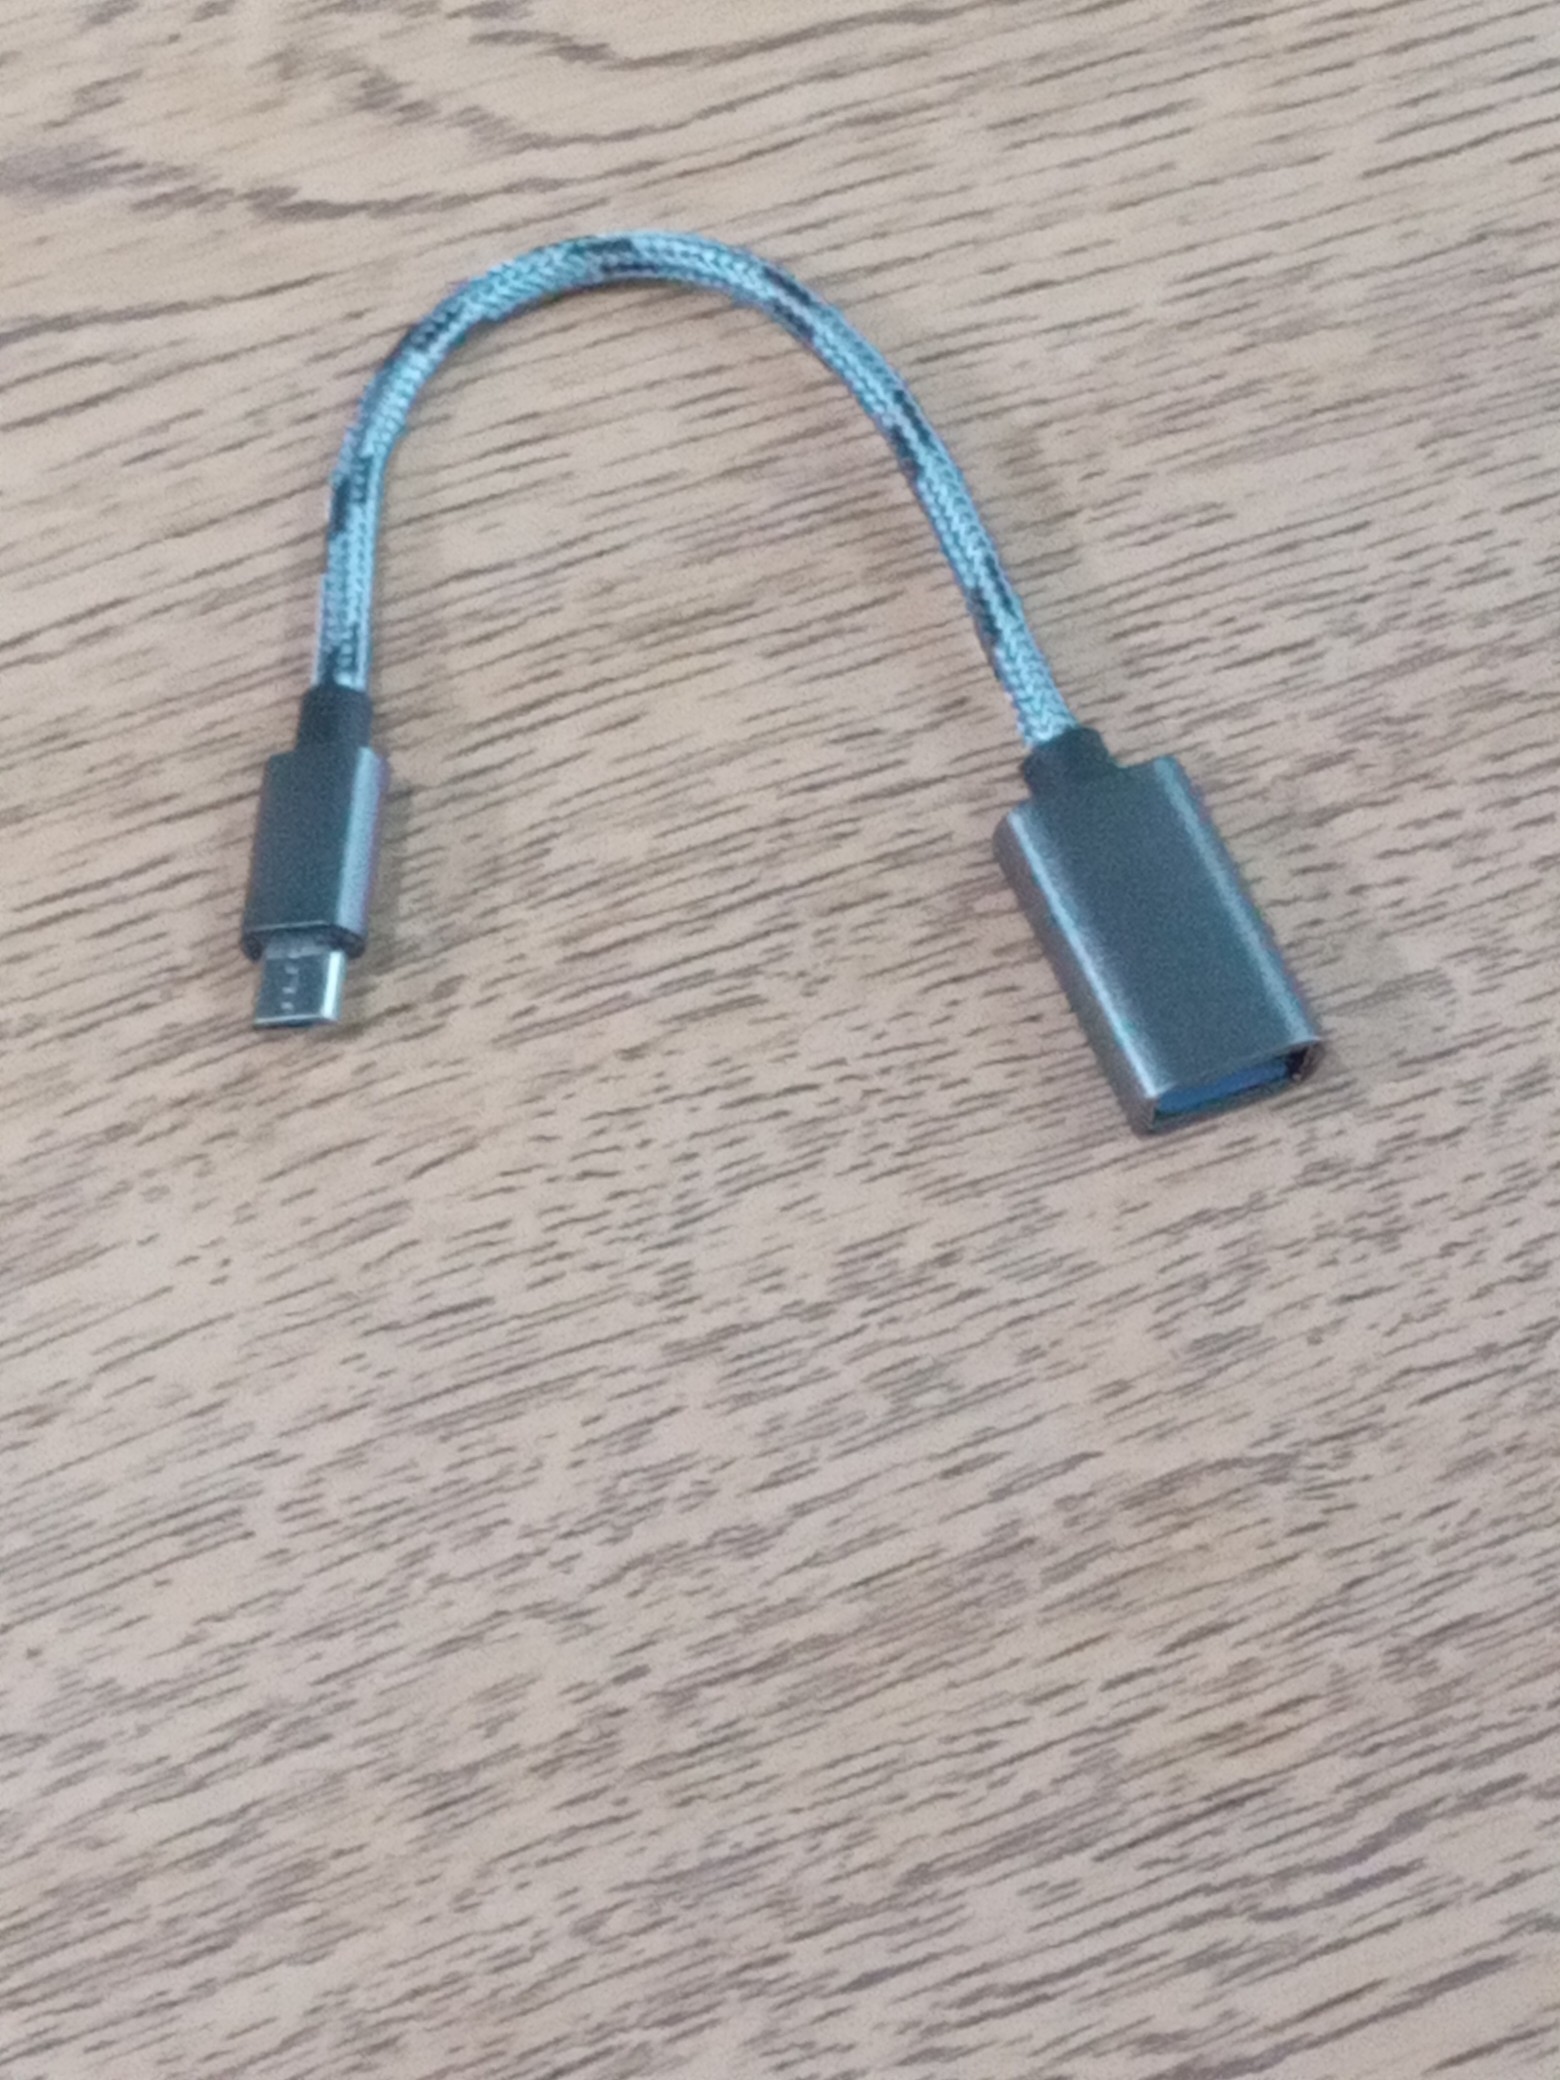 accesorios para electronica - Adaptador USB A Micro USB